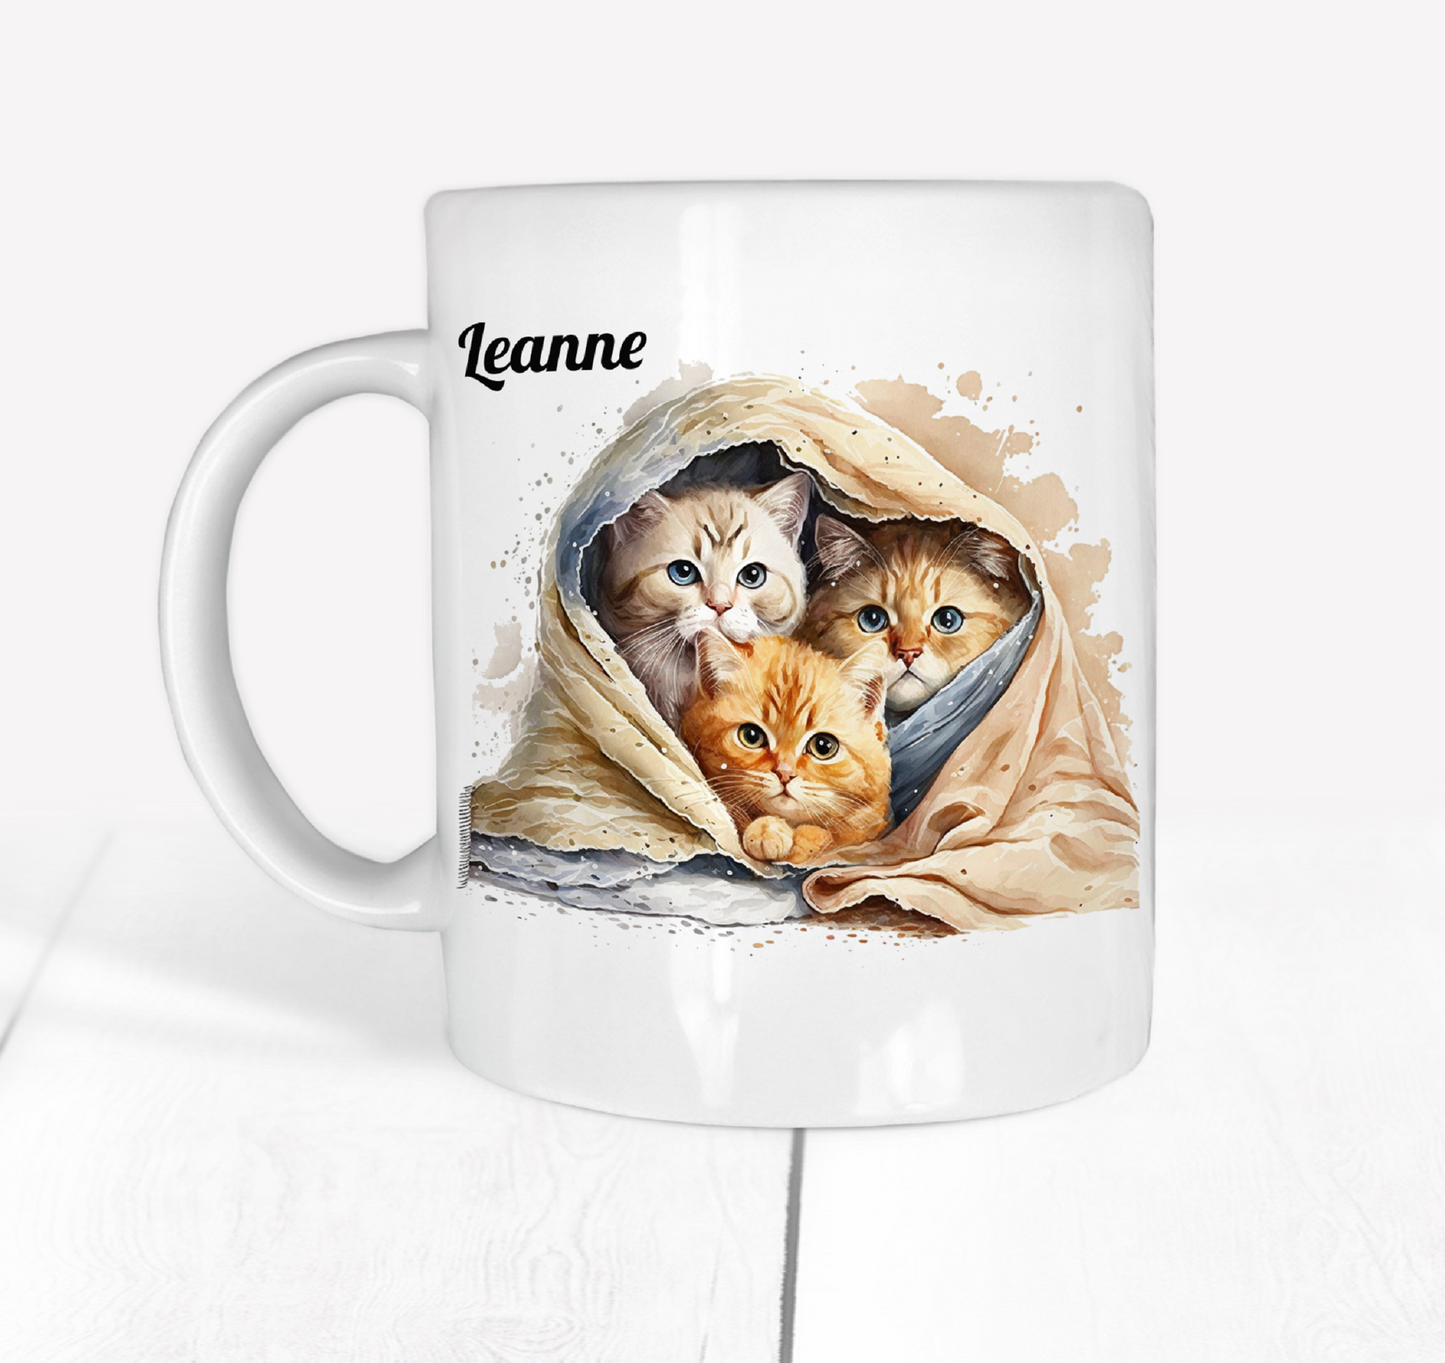  Personalised Kittens in Blankets Mug by Free Spirit Accessories sold by Free Spirit Accessories